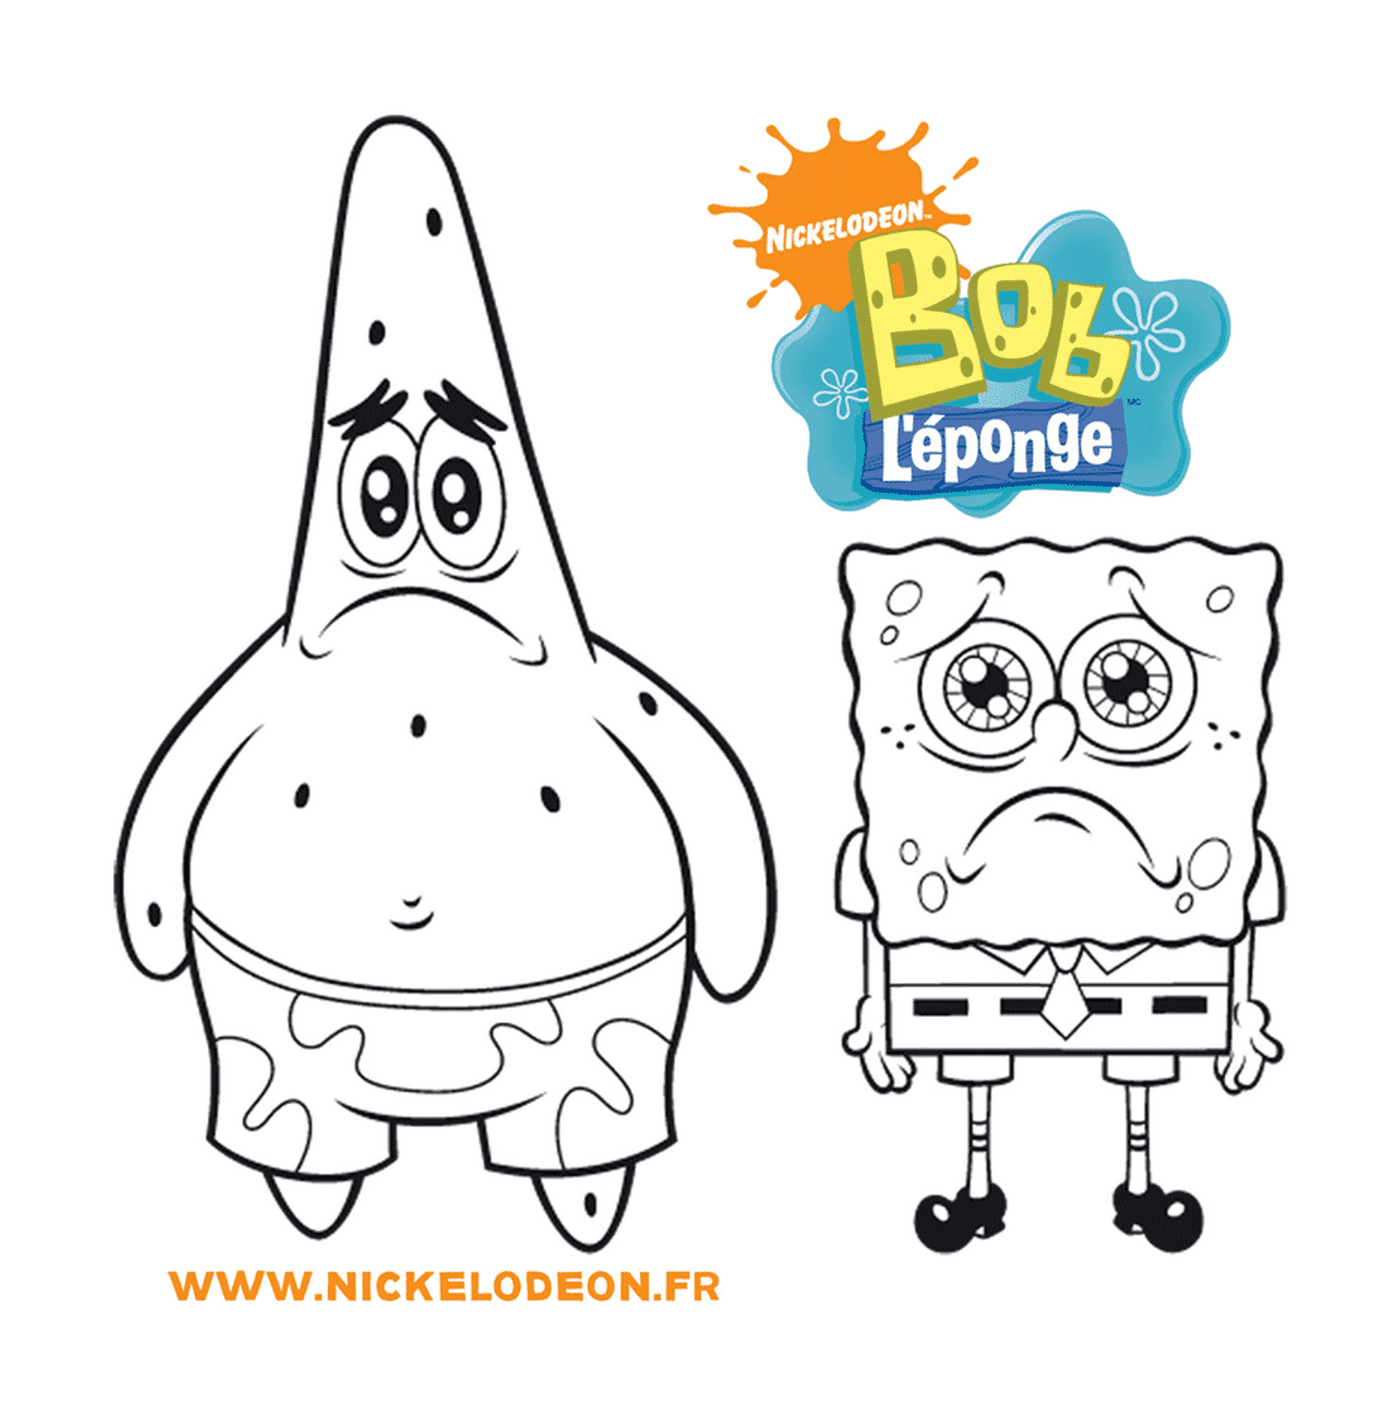  A Sponge Bob e il logo di Sponge Bob 